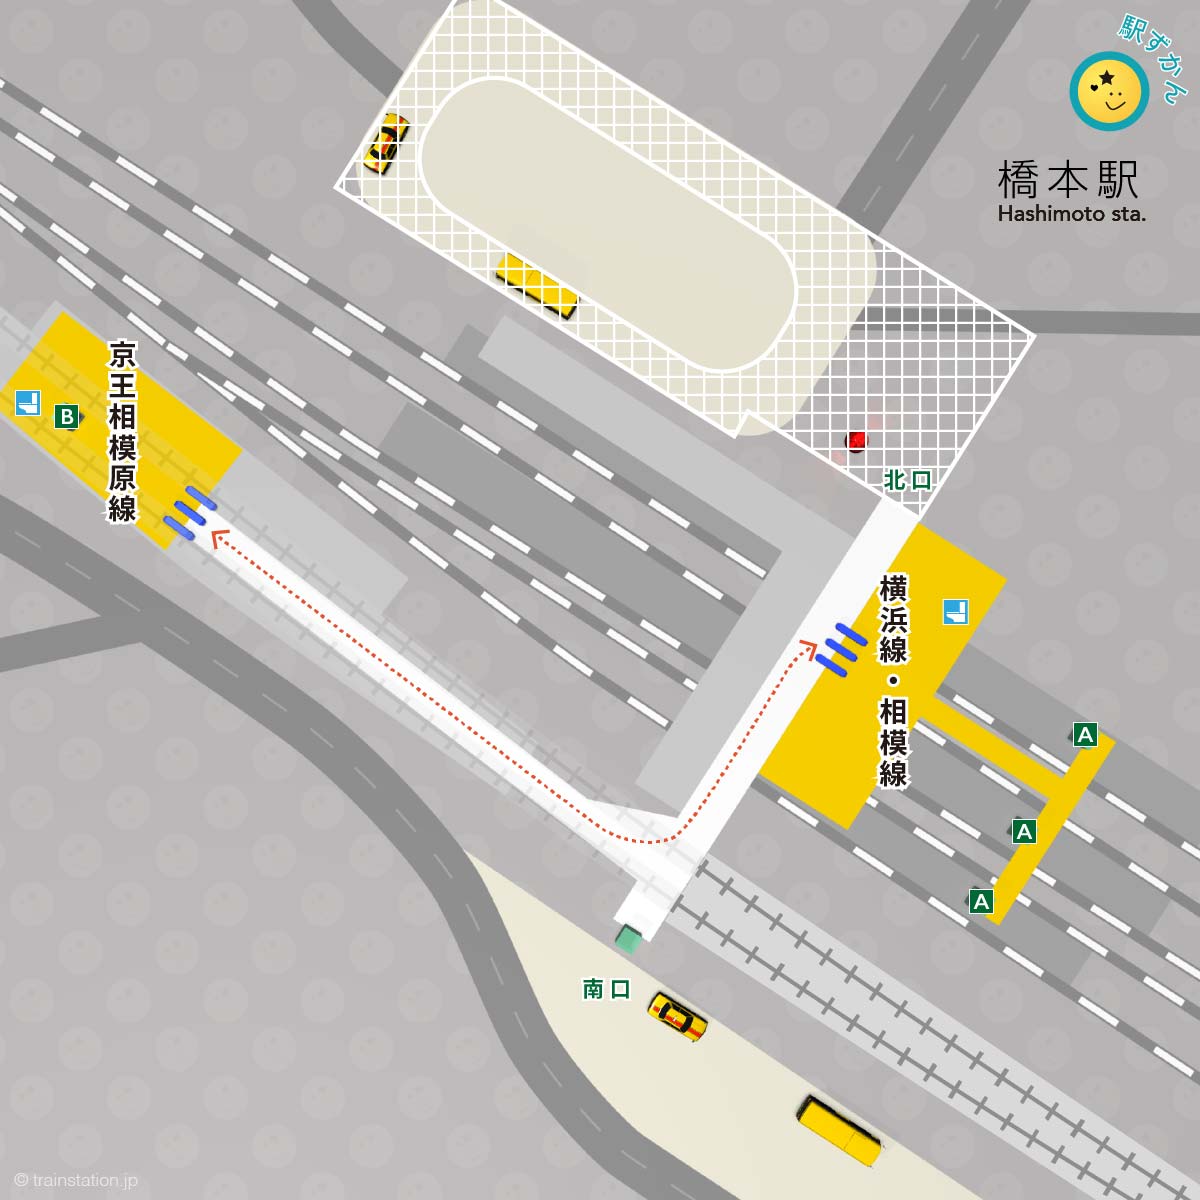 橋本駅構内図と周辺マップ